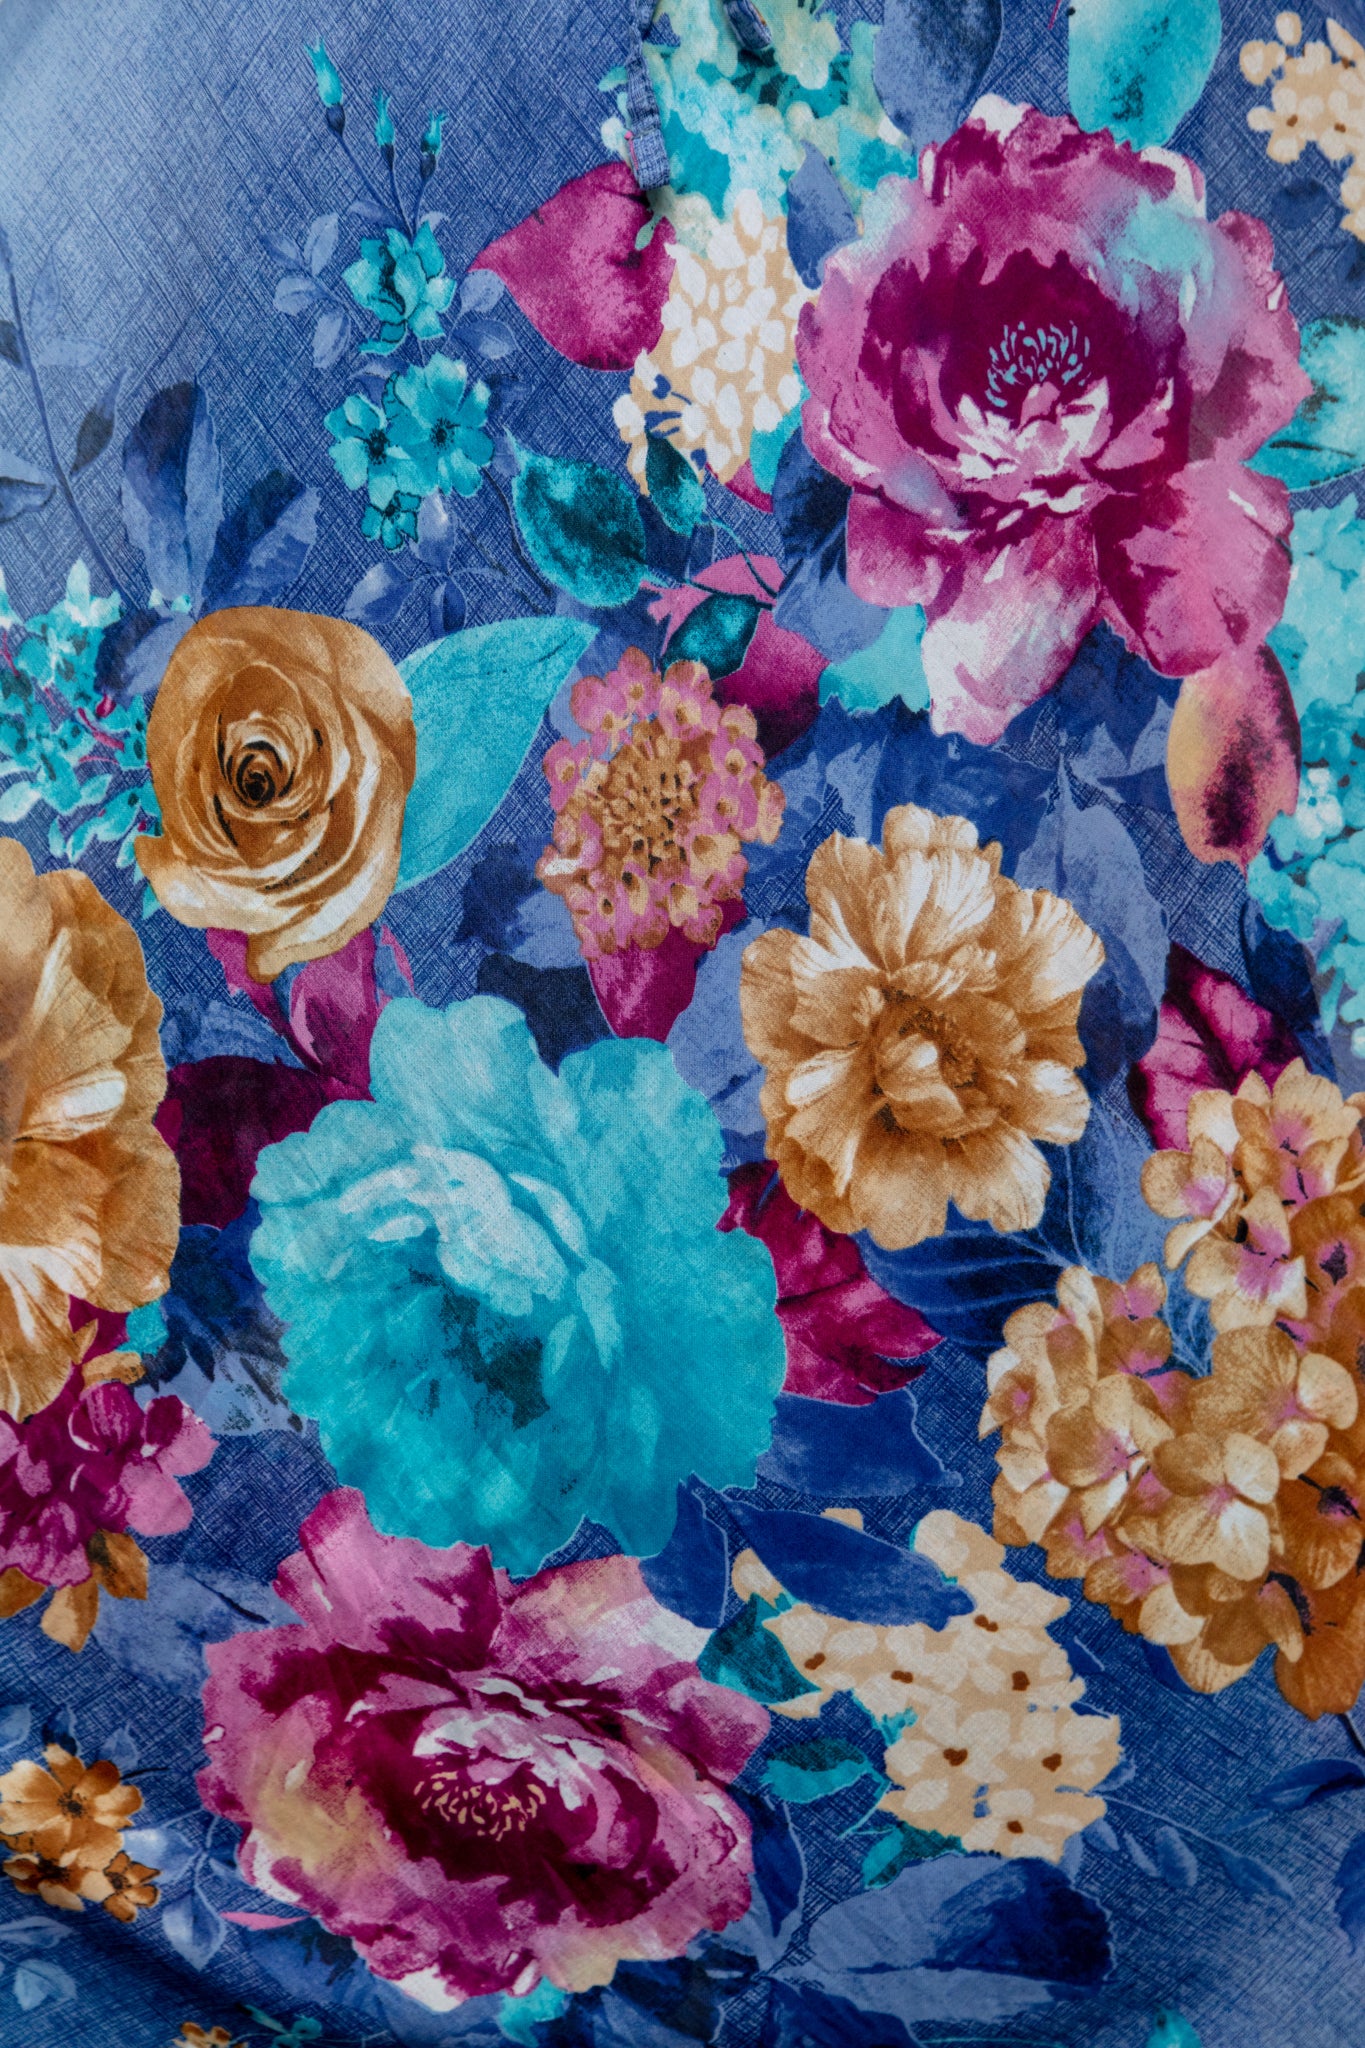 6120 Floral Print Maxi Dress